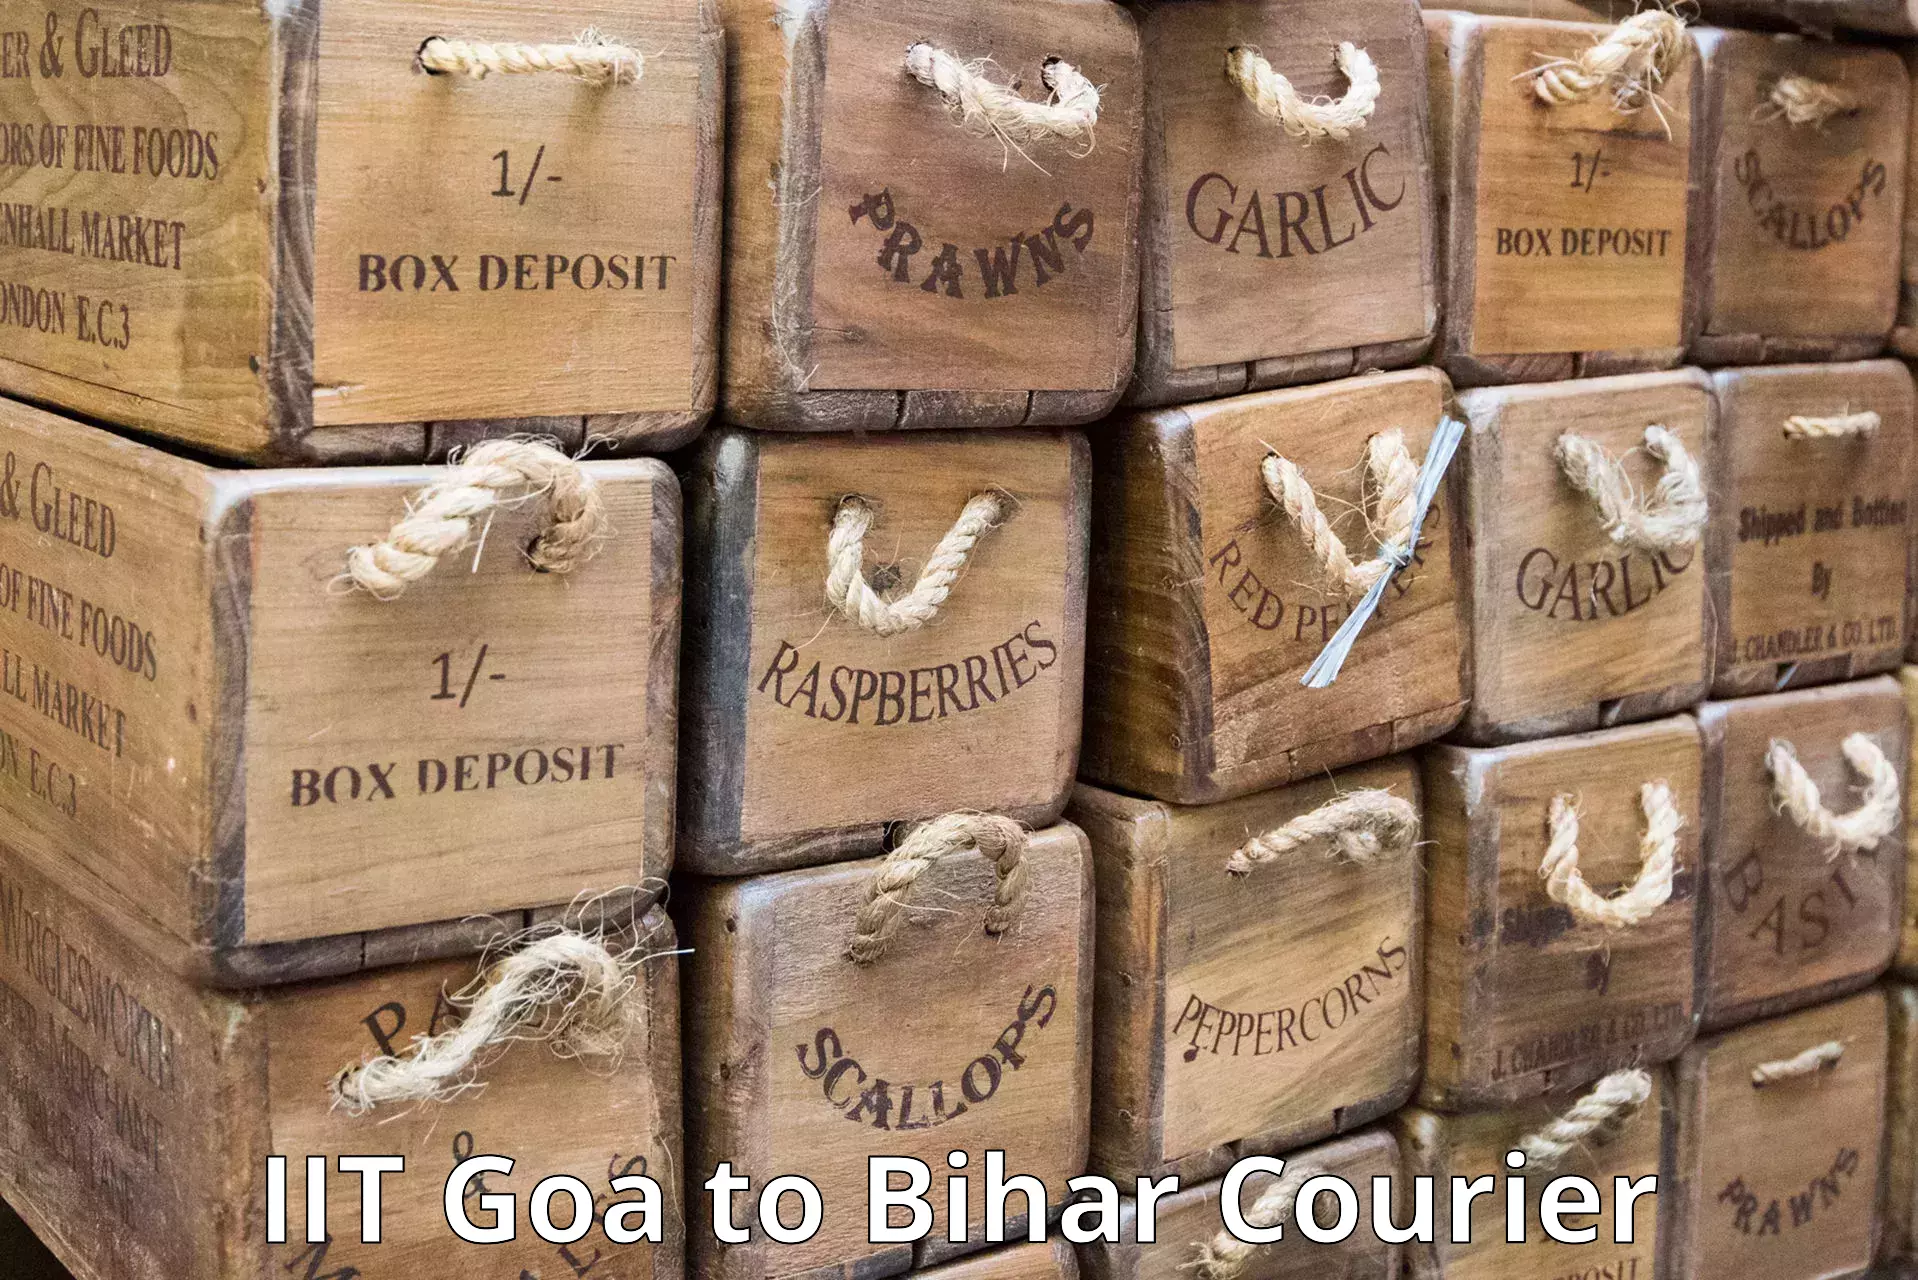 Global courier networks IIT Goa to Korha